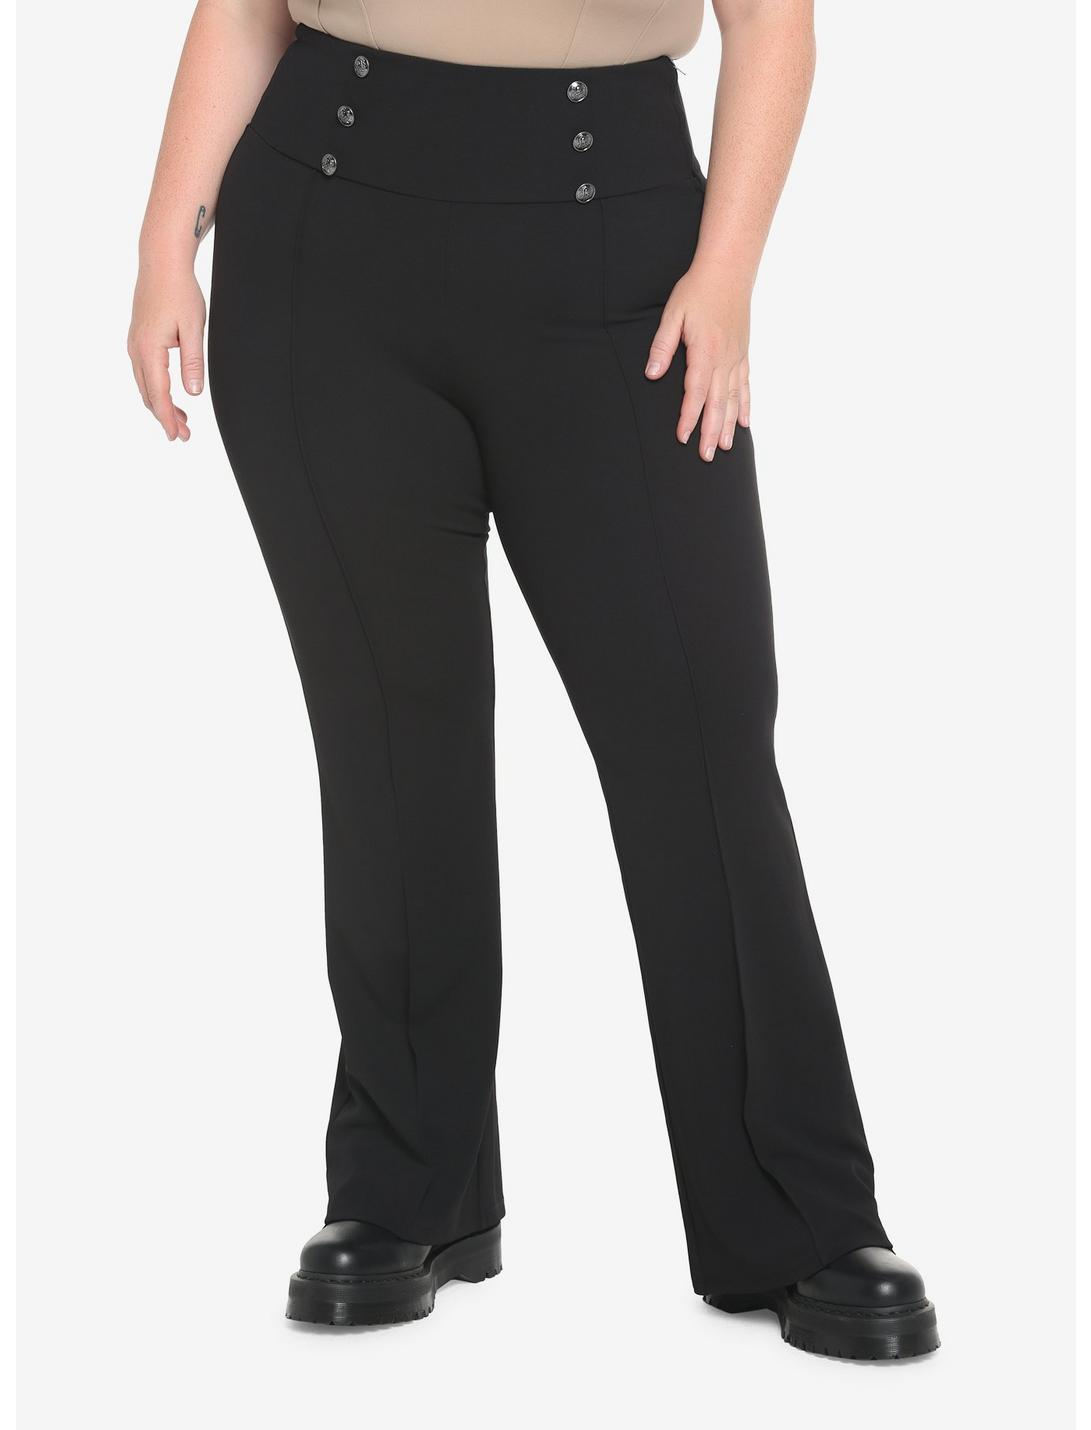 Black Hi-Rise Flare Pants Plus Size, BLACK, hi-res